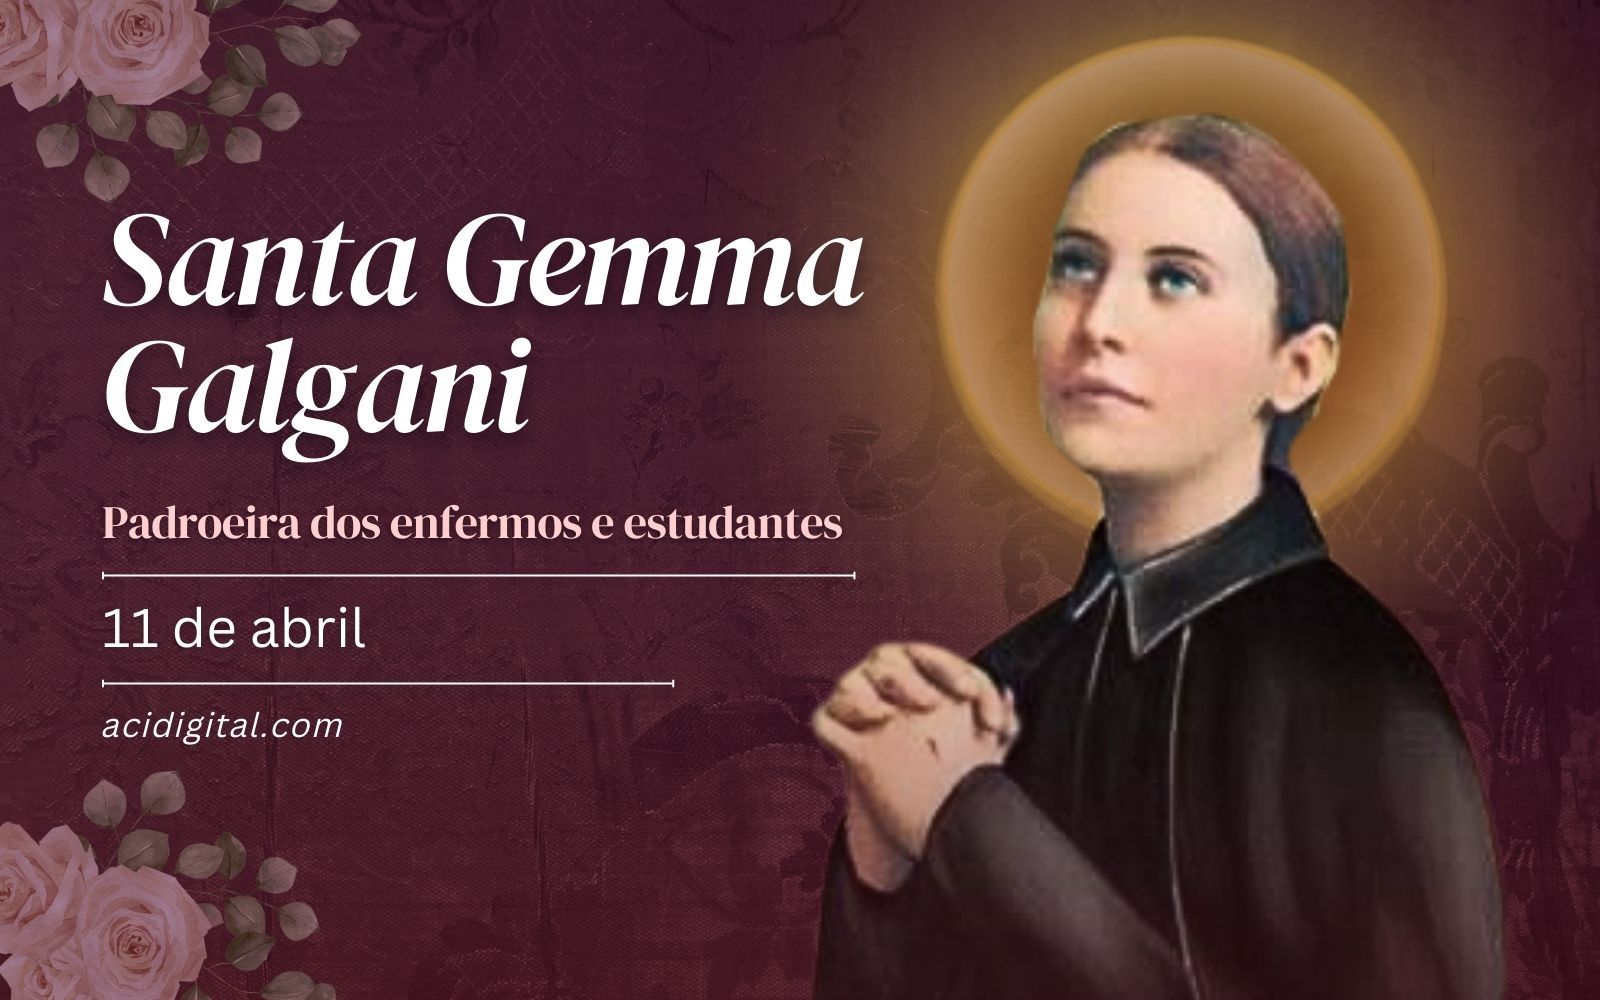 Igreja comemora hoje a jovem Santa Gemma Galgani